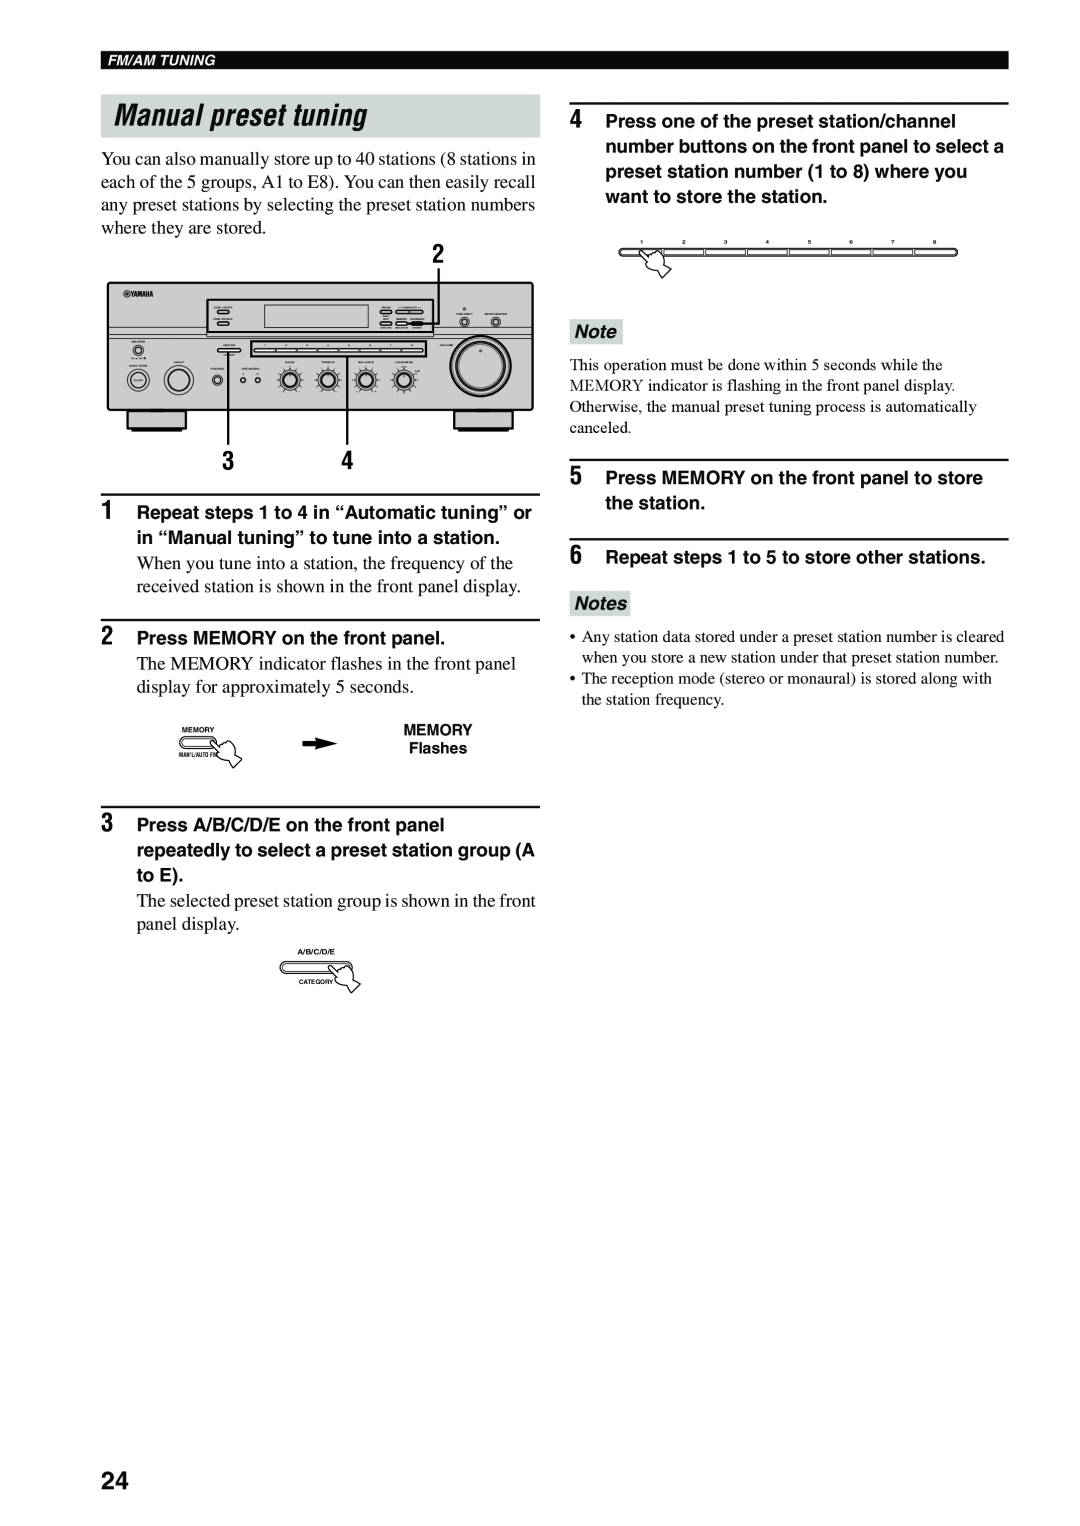 Yamaha RX-497 owner manual Manual preset tuning 